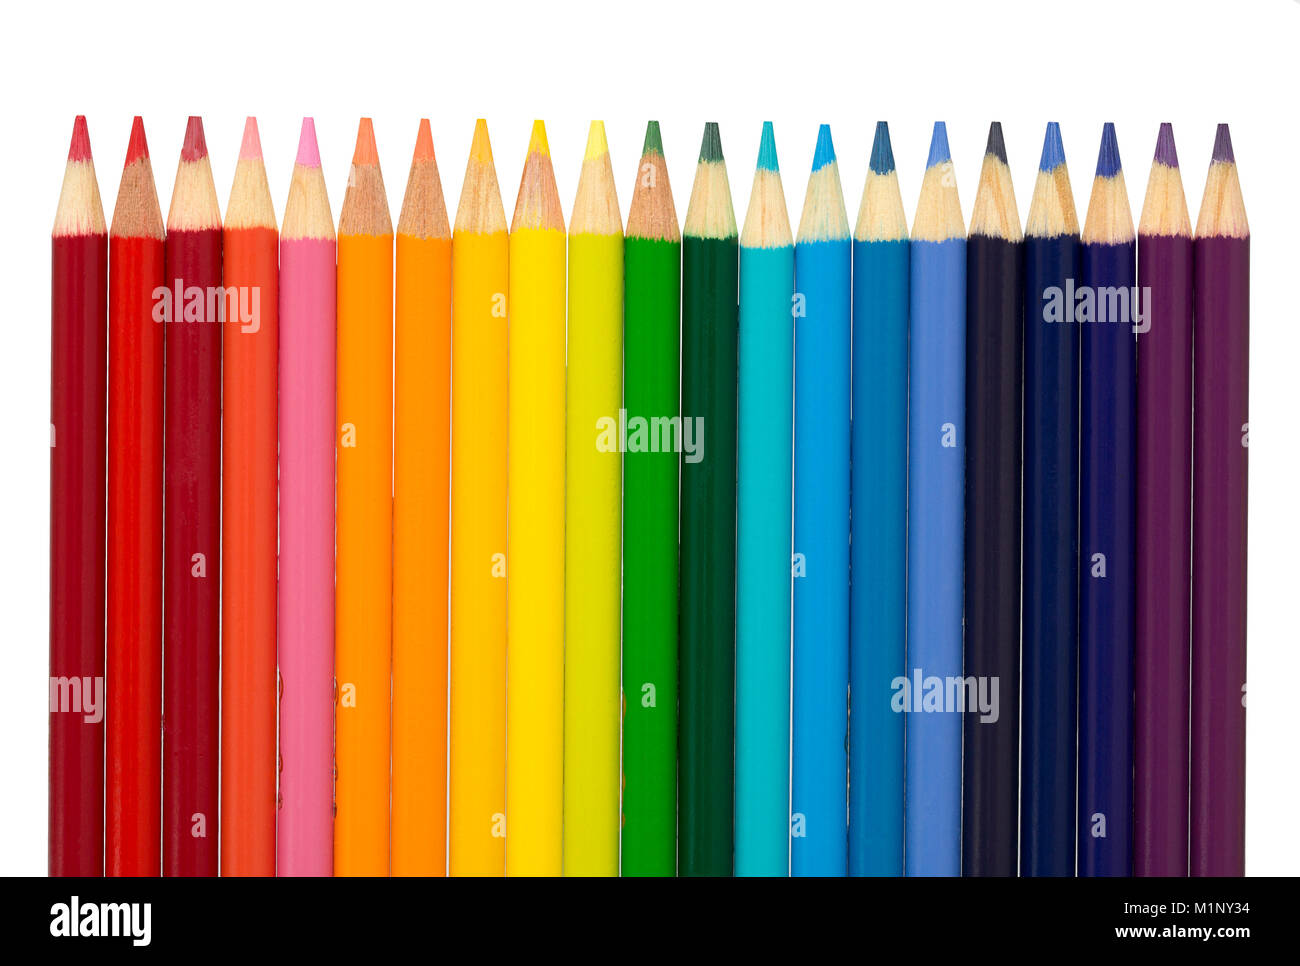 Eine Gruppe von Farbstifte in den Farben des Regenbogens - Rot, Orange, Gelb, Grün, Blau, Indigo und Violett. Stockfoto